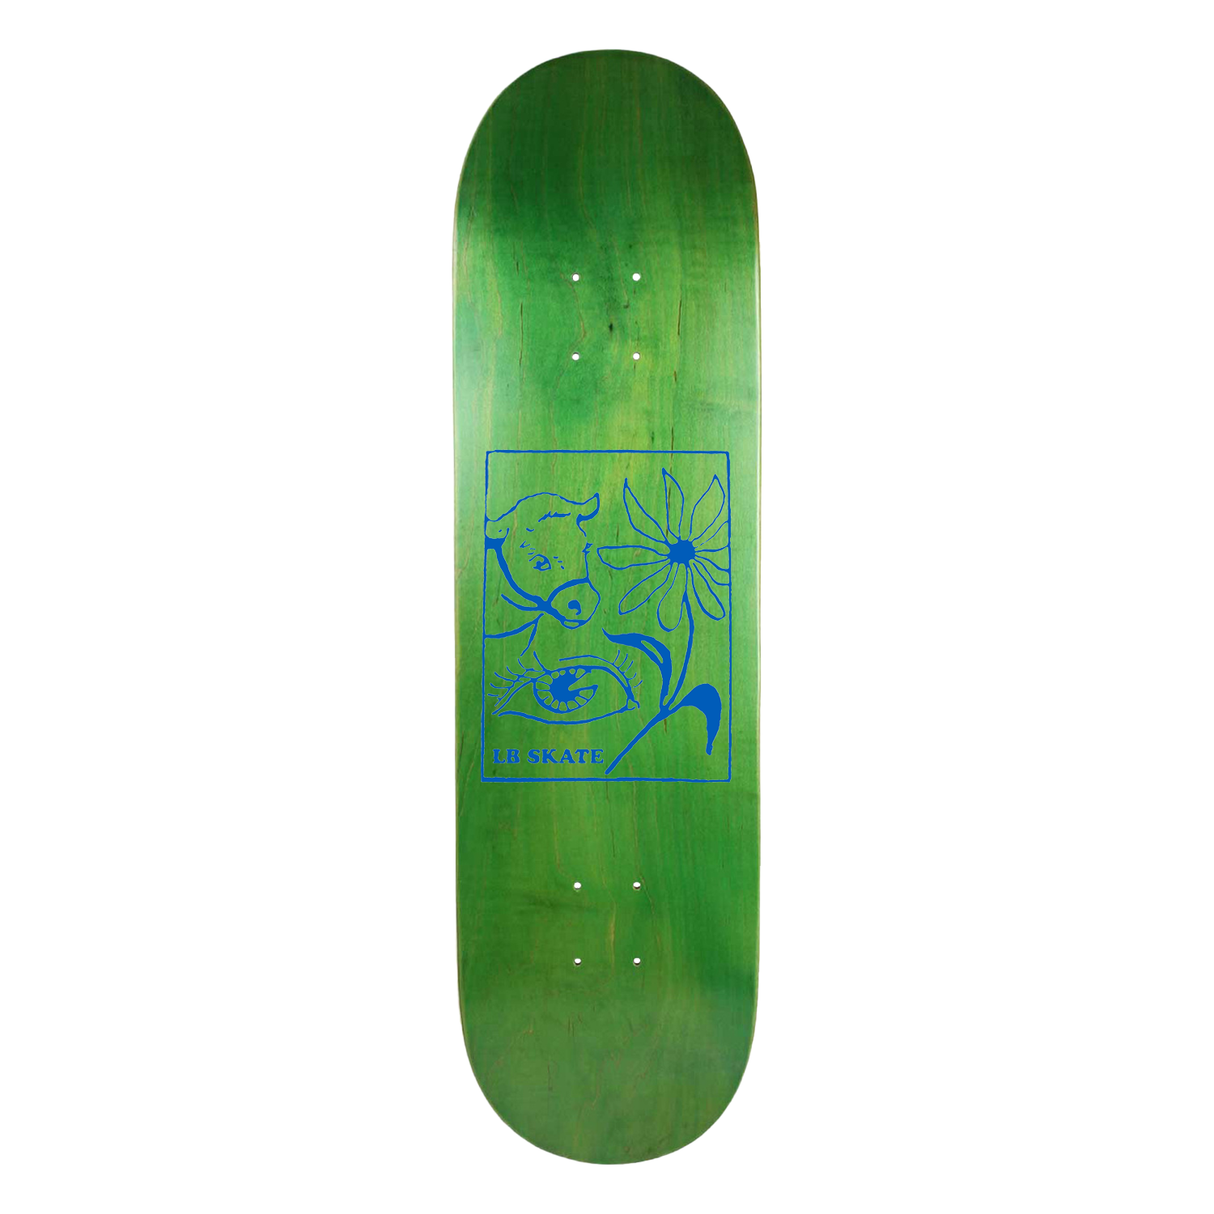 Long Beach Skate Co. "Randomness" 8.62" Green Stain Skateboard Deck